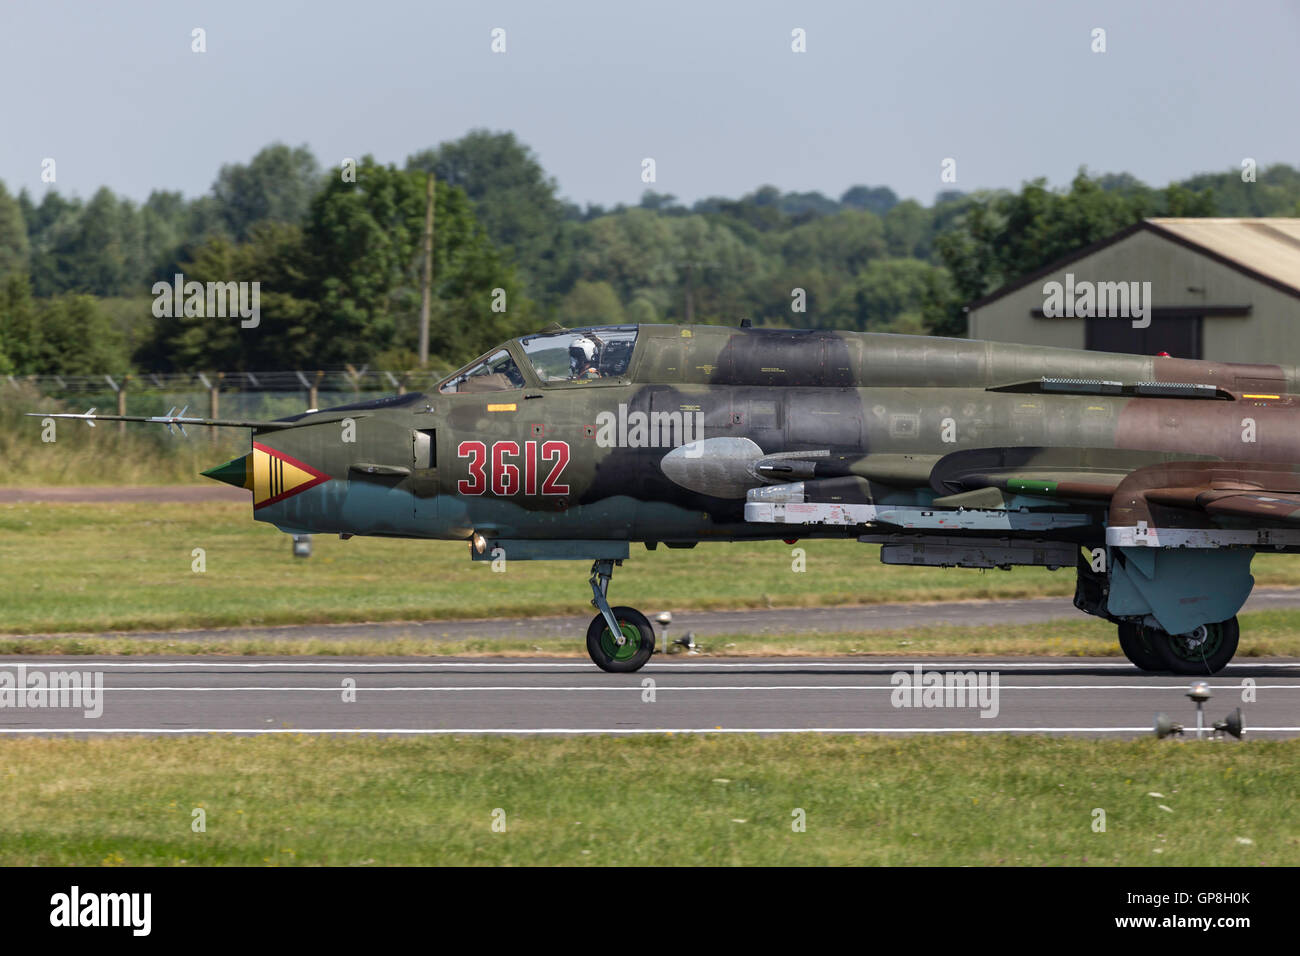 Polish Air Force (Siły Powietrzne) Sukhoi Su-22M4 "Fitter" des aéronefs d'attaque Banque D'Images